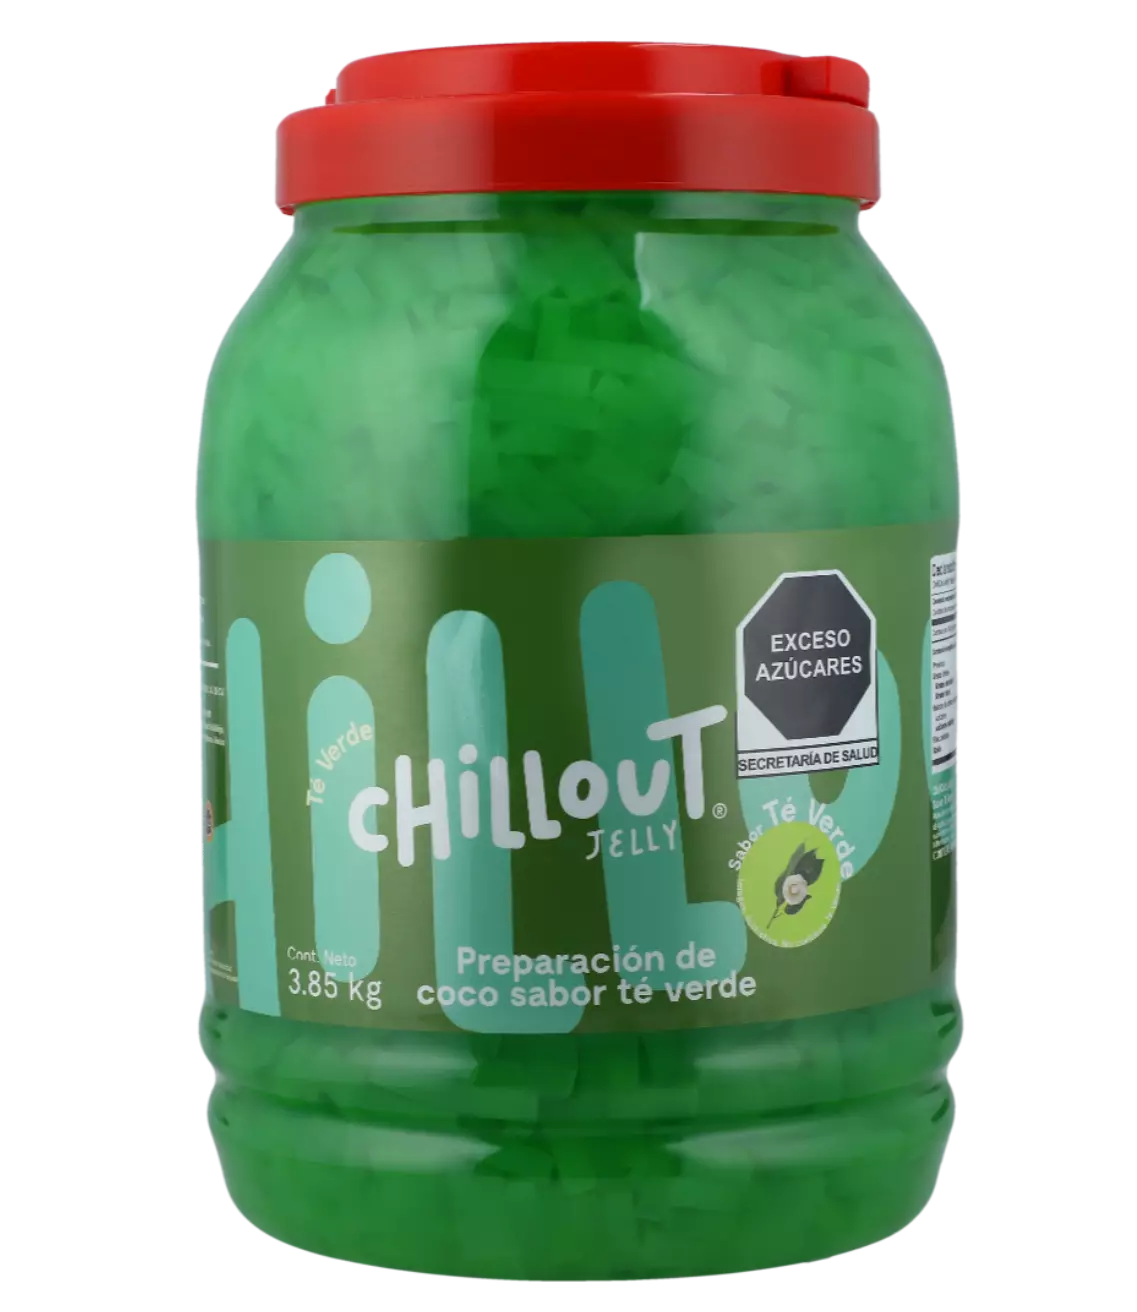 Chillout Jelly Té Verde